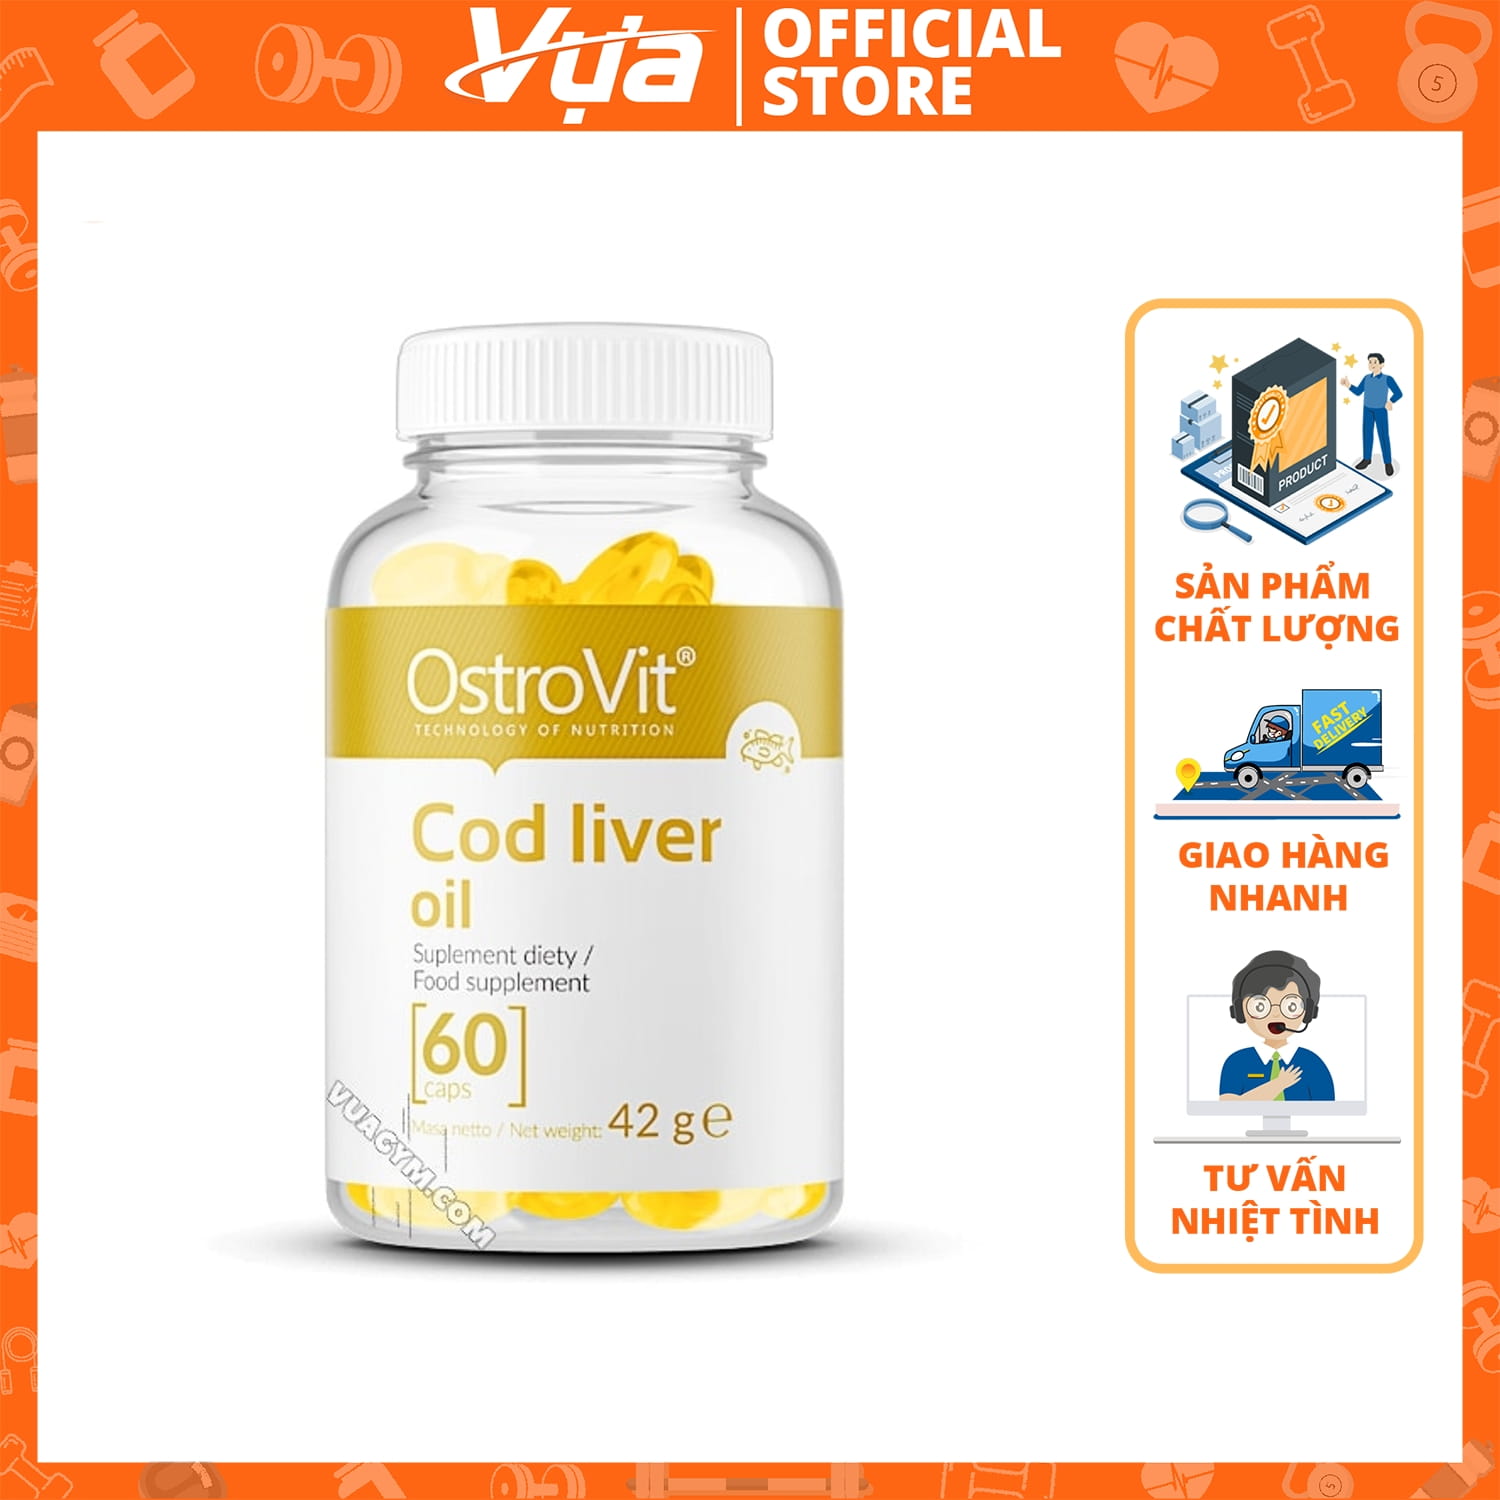 OstroVit - Cod liver oil 60 viên - Thực Phẩm Bổ Sung Sức Khỏe Chính Hãng